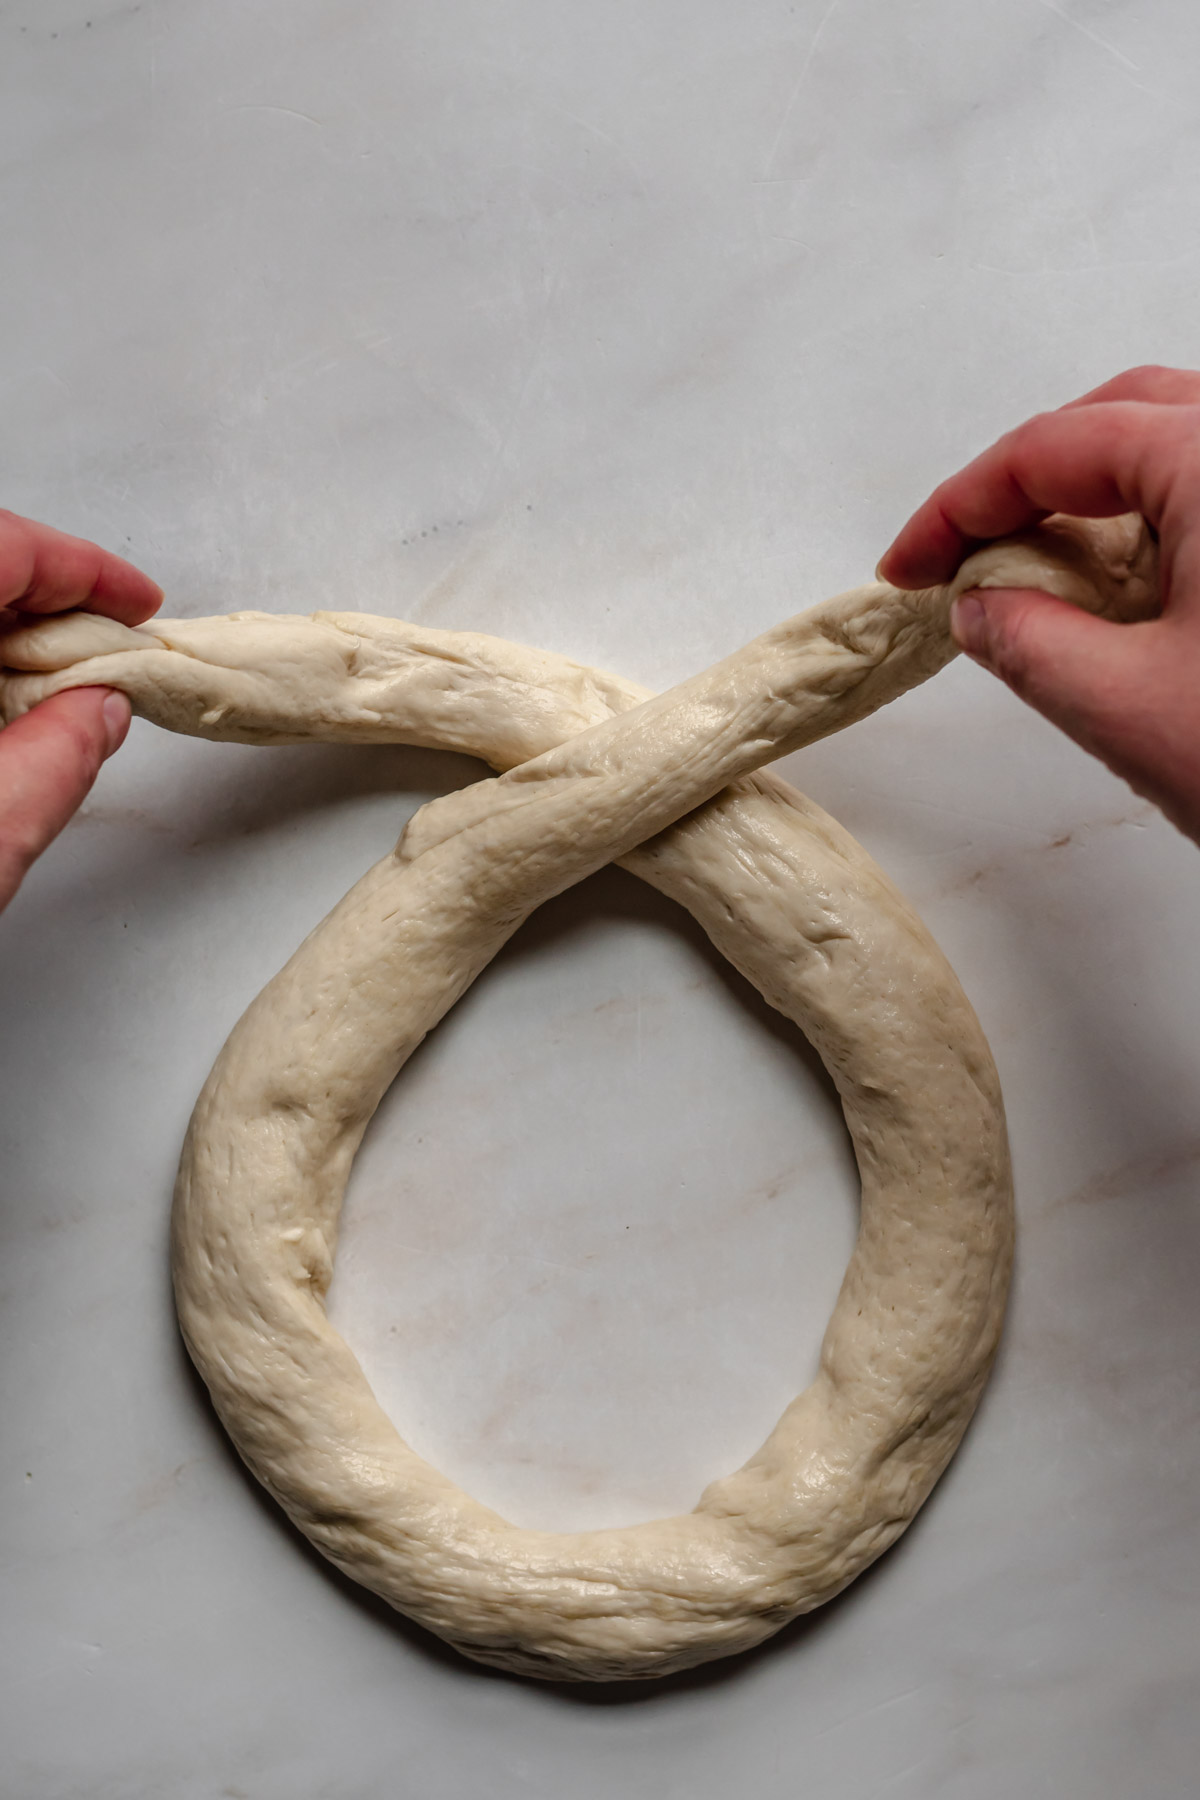 Pretzel dough being formed into a pretzel.